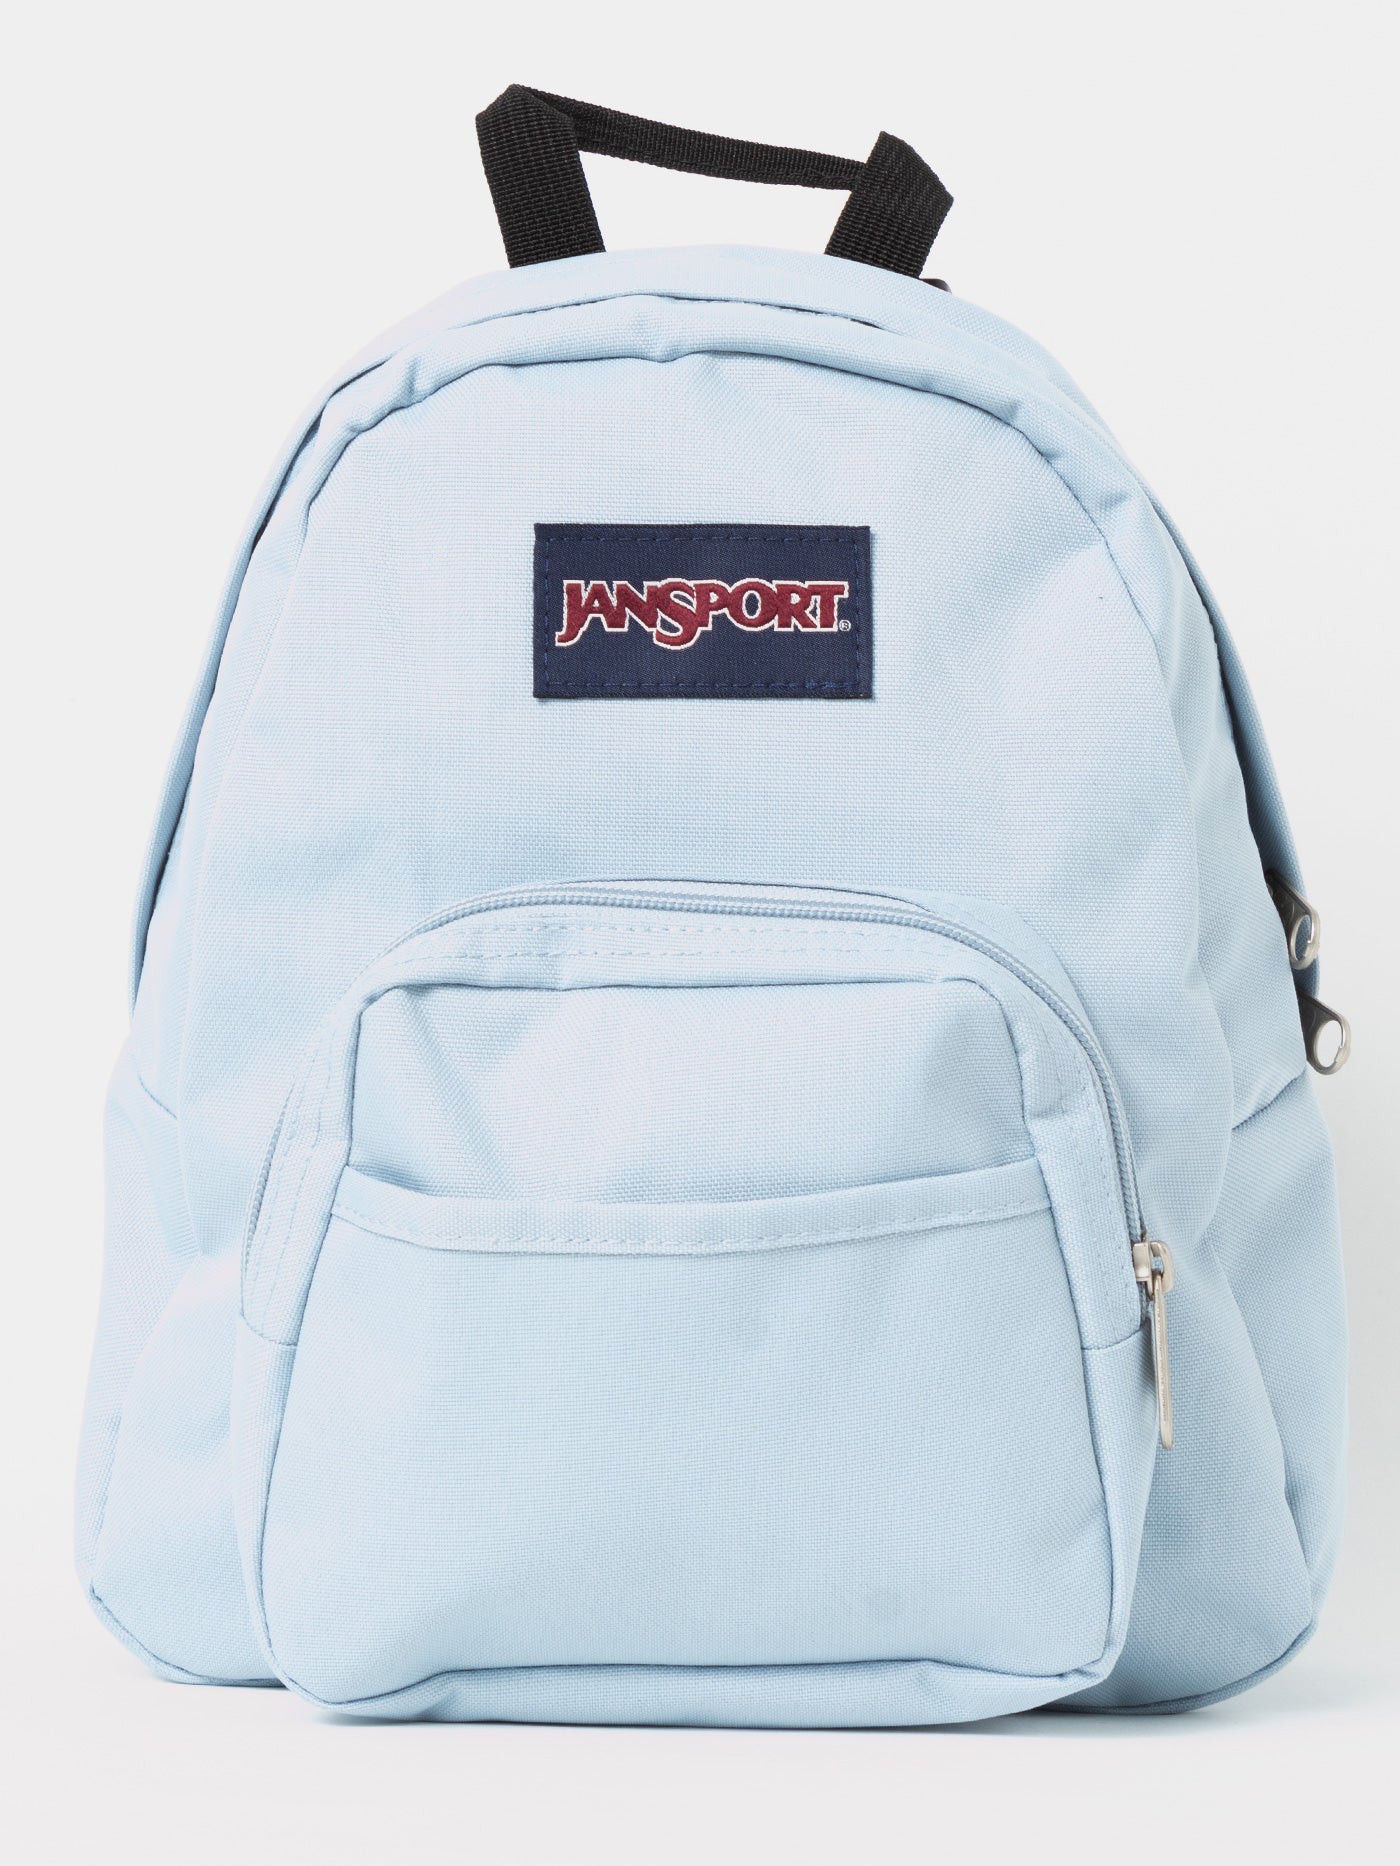 Jansport Half Pint Backpack